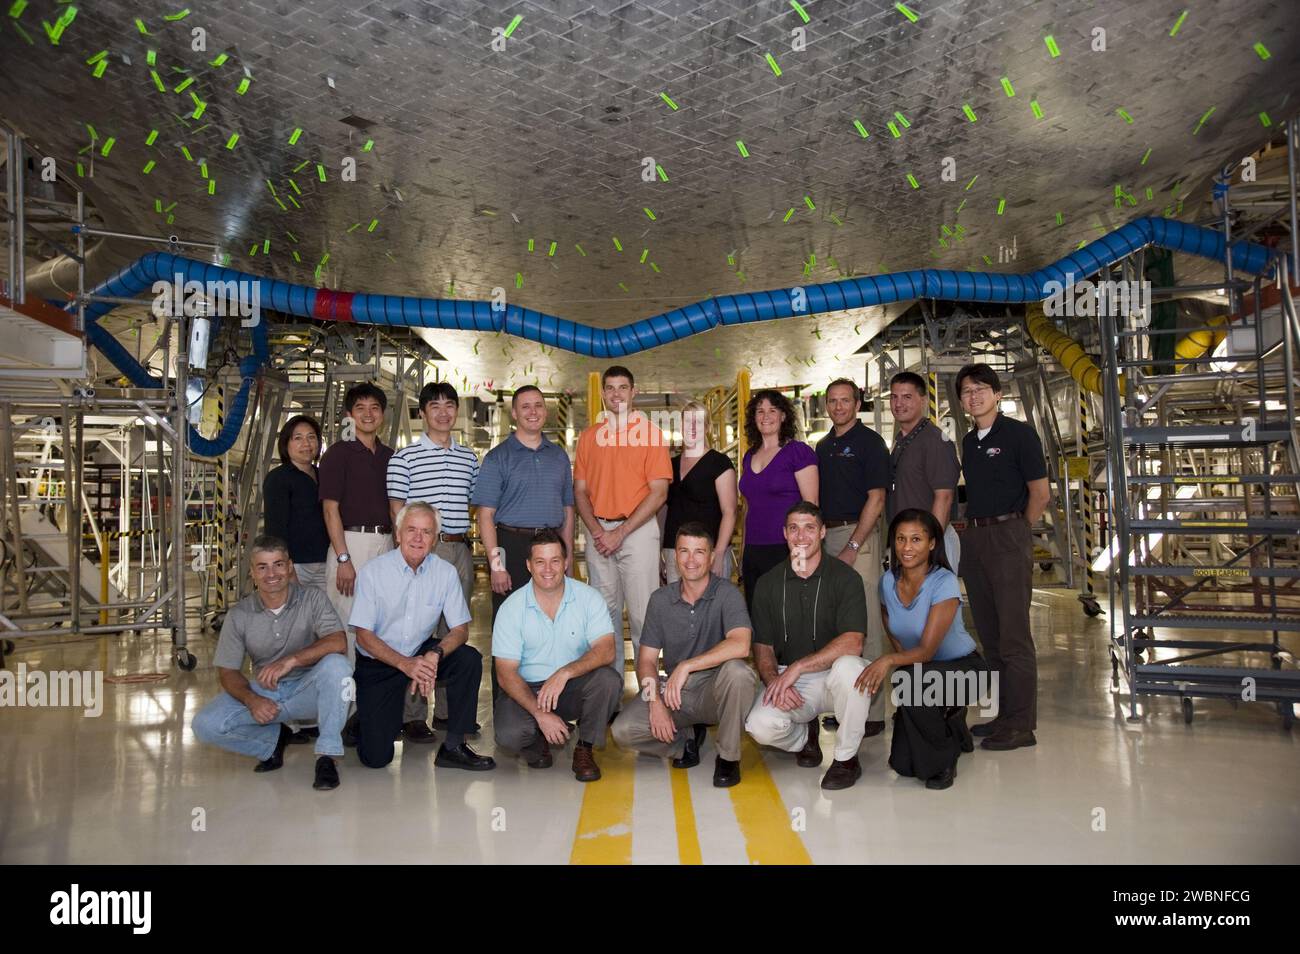 CAPE CANAVERAL, Ban. --- al Kennedy Space Center della NASA in Florida, la classe dei 2009 candidati astronauti, chiamati anche ASCAN, scatta una foto sotto lo Space Shuttle Atlantis nell'Orbiter Processing Facility-1. In piedi, da sinistra, ci sono lo specialista di addestramento degli astronauti Debbie Trainor, Takuya Onishi e Kimiya Yui della JAXA, il maggiore dell'aeronautica della NASA Jack D. Fischer, Jeremy Hansen del CSA, Kathleen 'Kate' Rubins della NASA e Serena M. Aunon, David Saint-Jacques del CSA, Kjell N. Lindgren della NASA e Norishige Kanai della JAXA. Inginocchiati, da sinistra, sono il tenente colonnello Mark Vande, capo dell'astronauta CAN Foto Stock